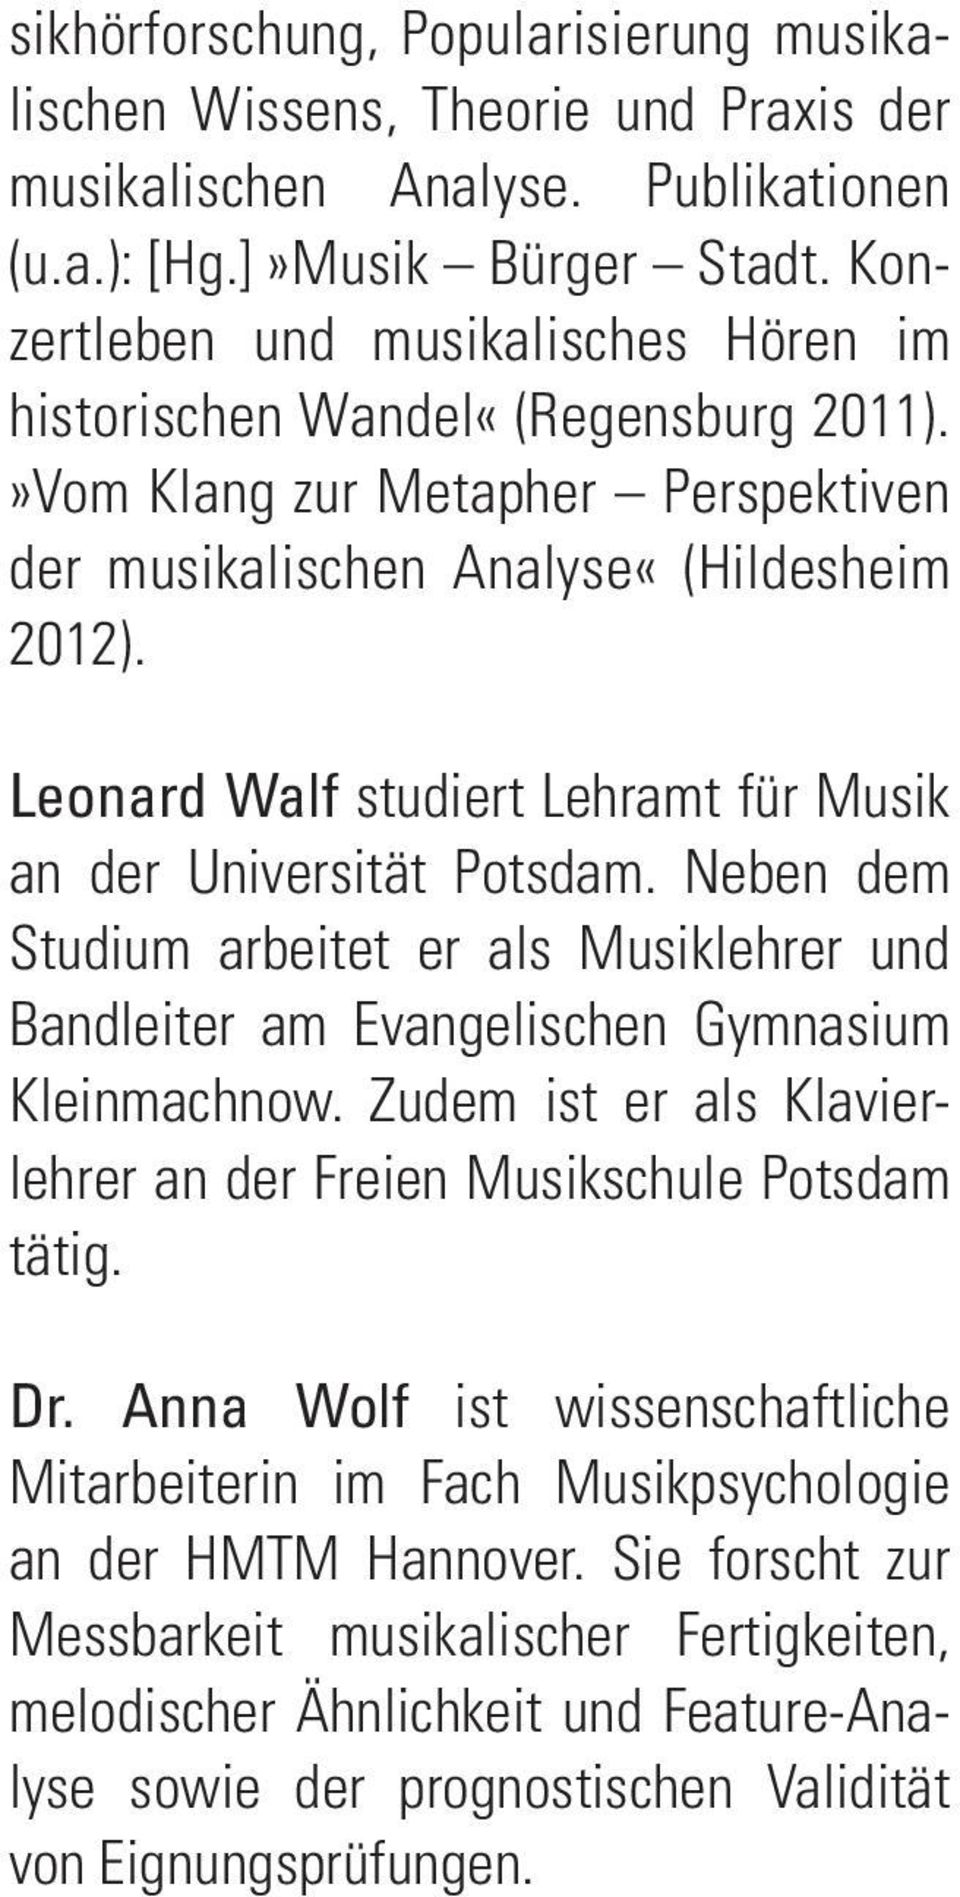 Leonard Walf studiert Lehramt für Musik an der Universität Potsdam. Neben dem Studium arbeitet er als Musiklehrer und Bandleiter am Evangelischen Gymnasium Kleinmachnow.